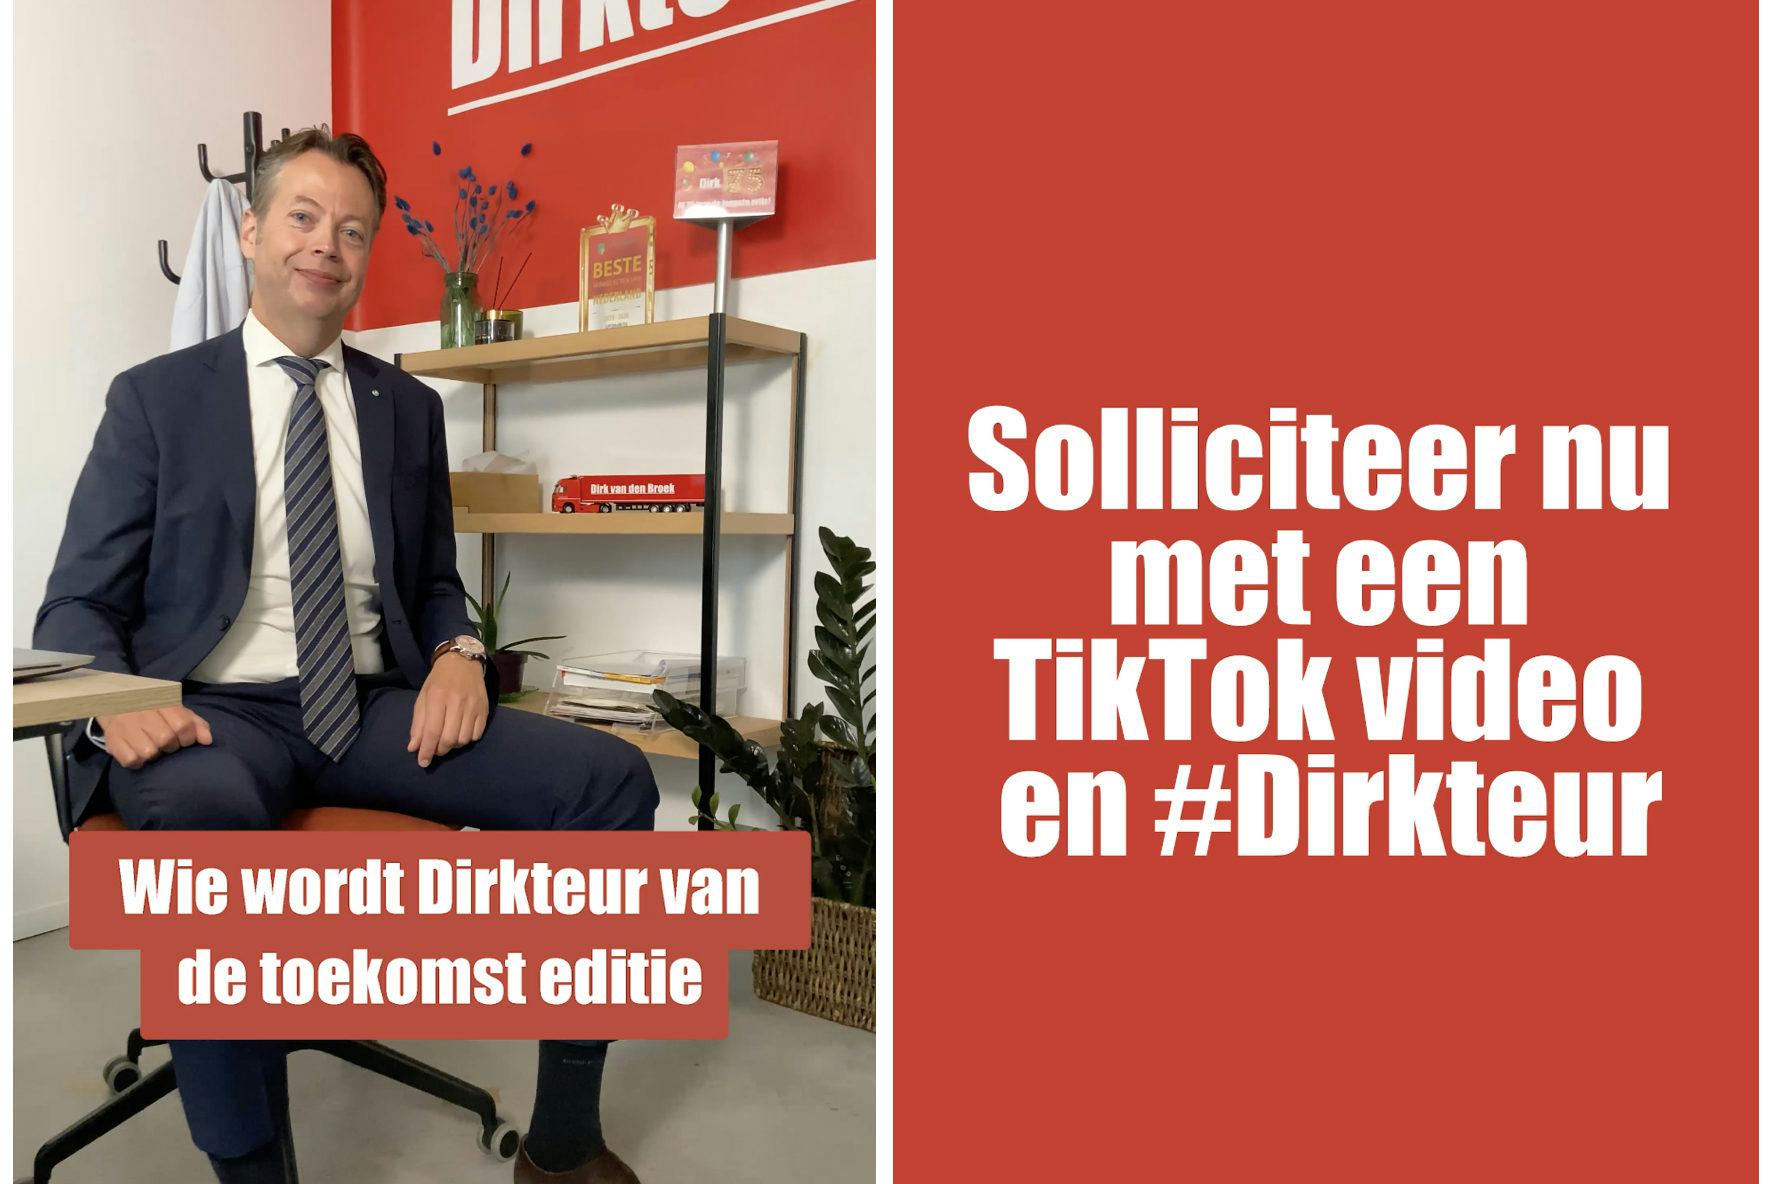 Dirk van den Broek werft trainees via TikTok